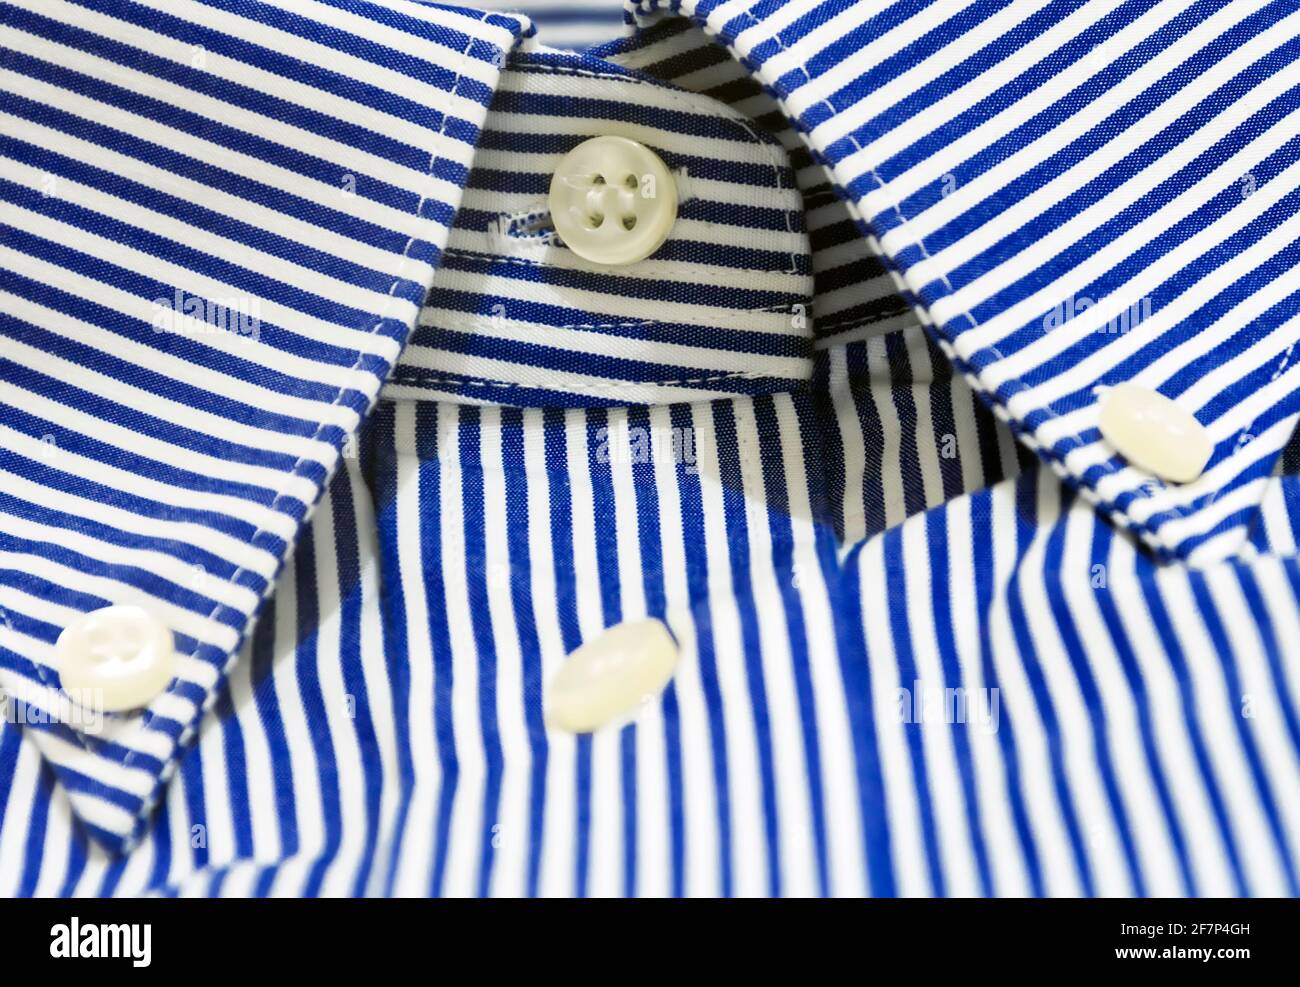 Camisa de rayas azul blanco fotografías de - Alamy